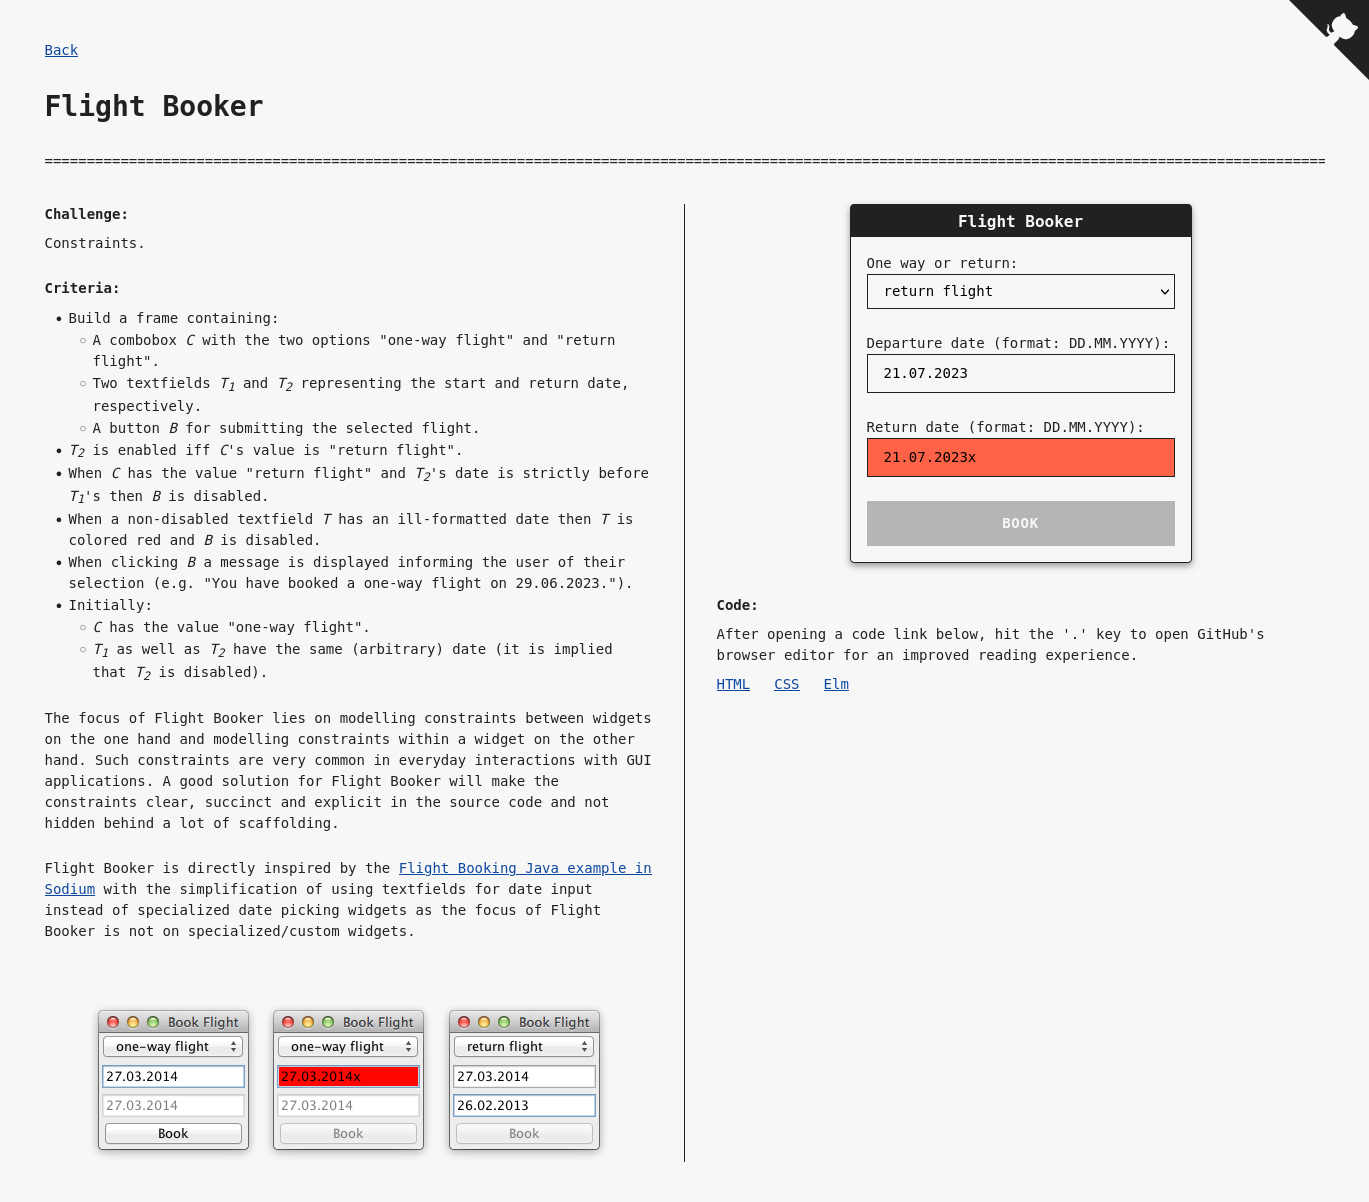 A screenshot of the Flight Booker task